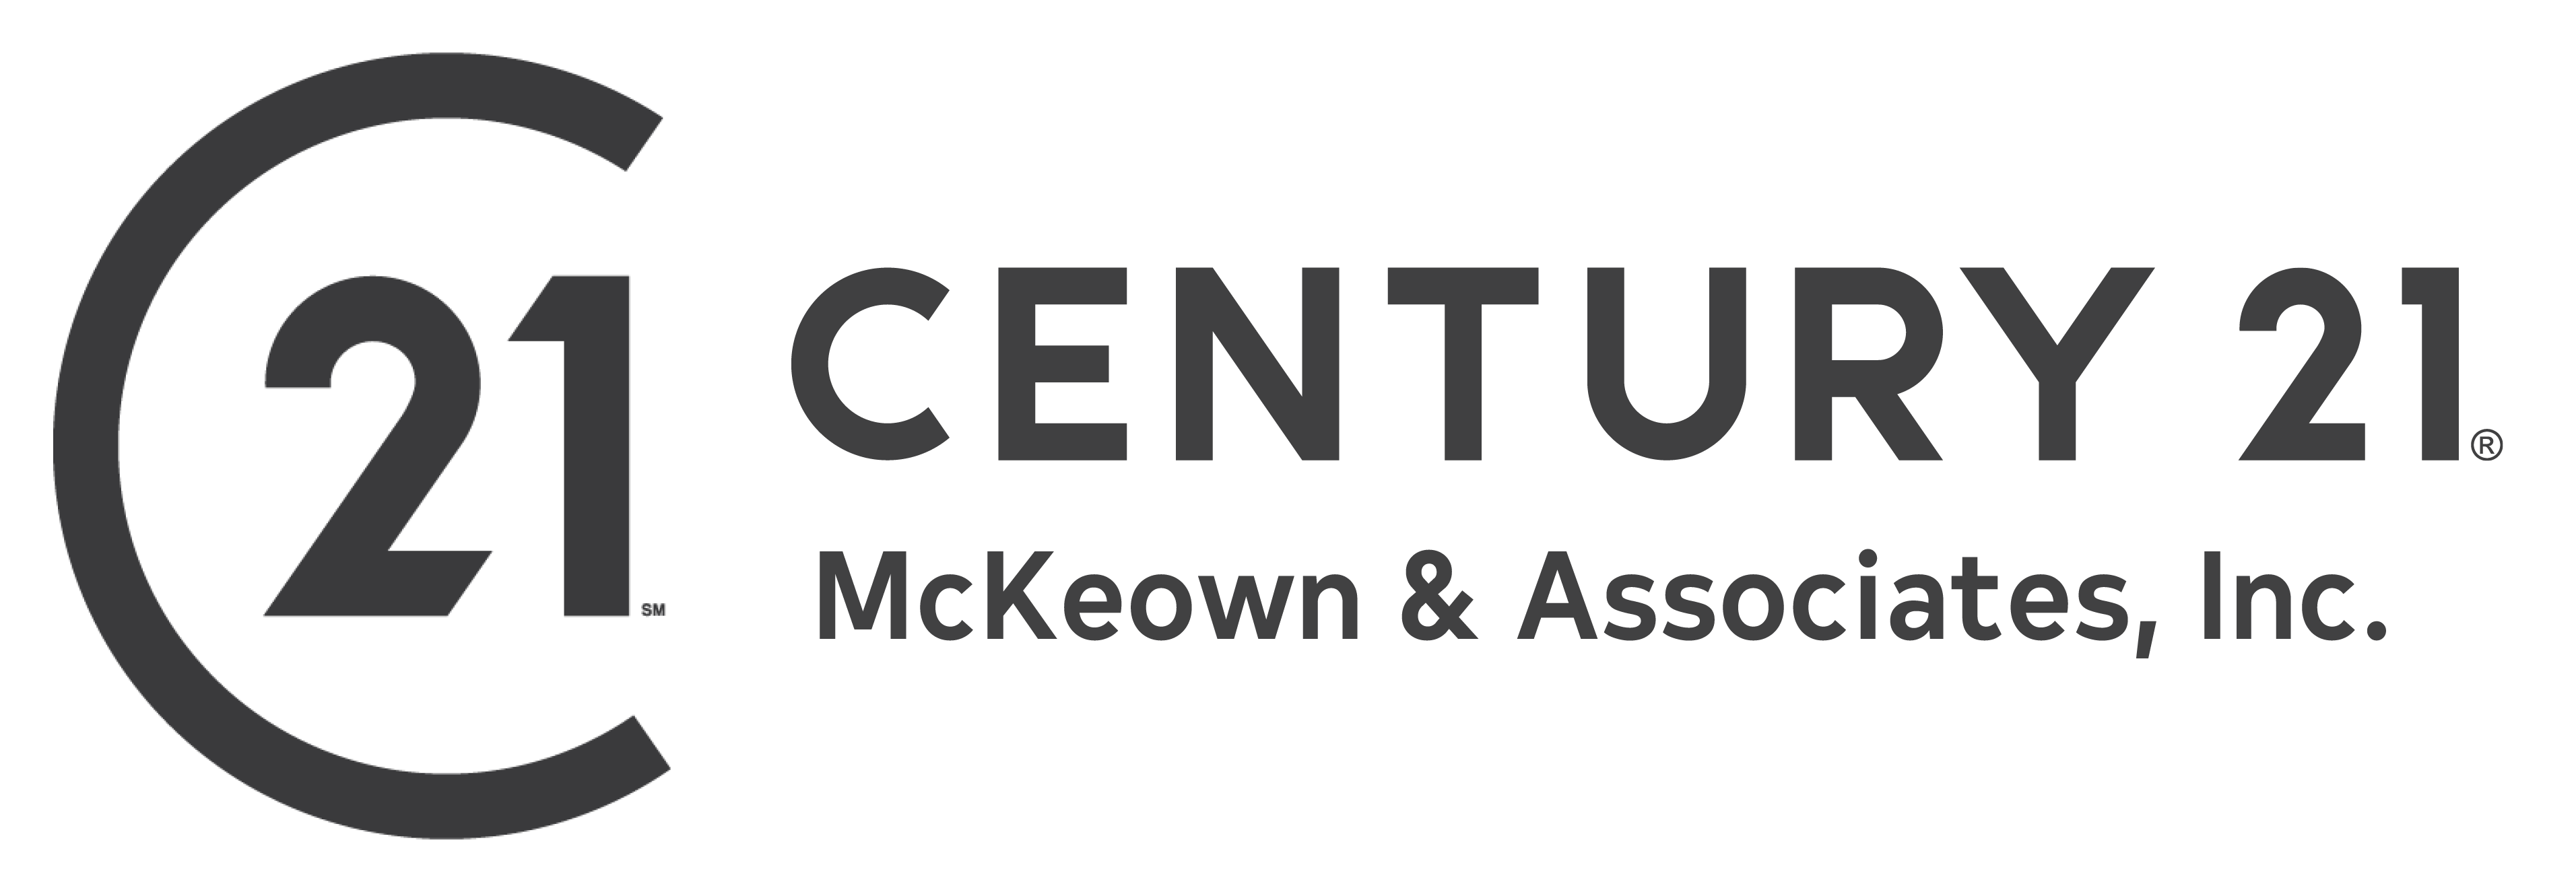 CENTURY 21 McKeown & Associates, Inc.